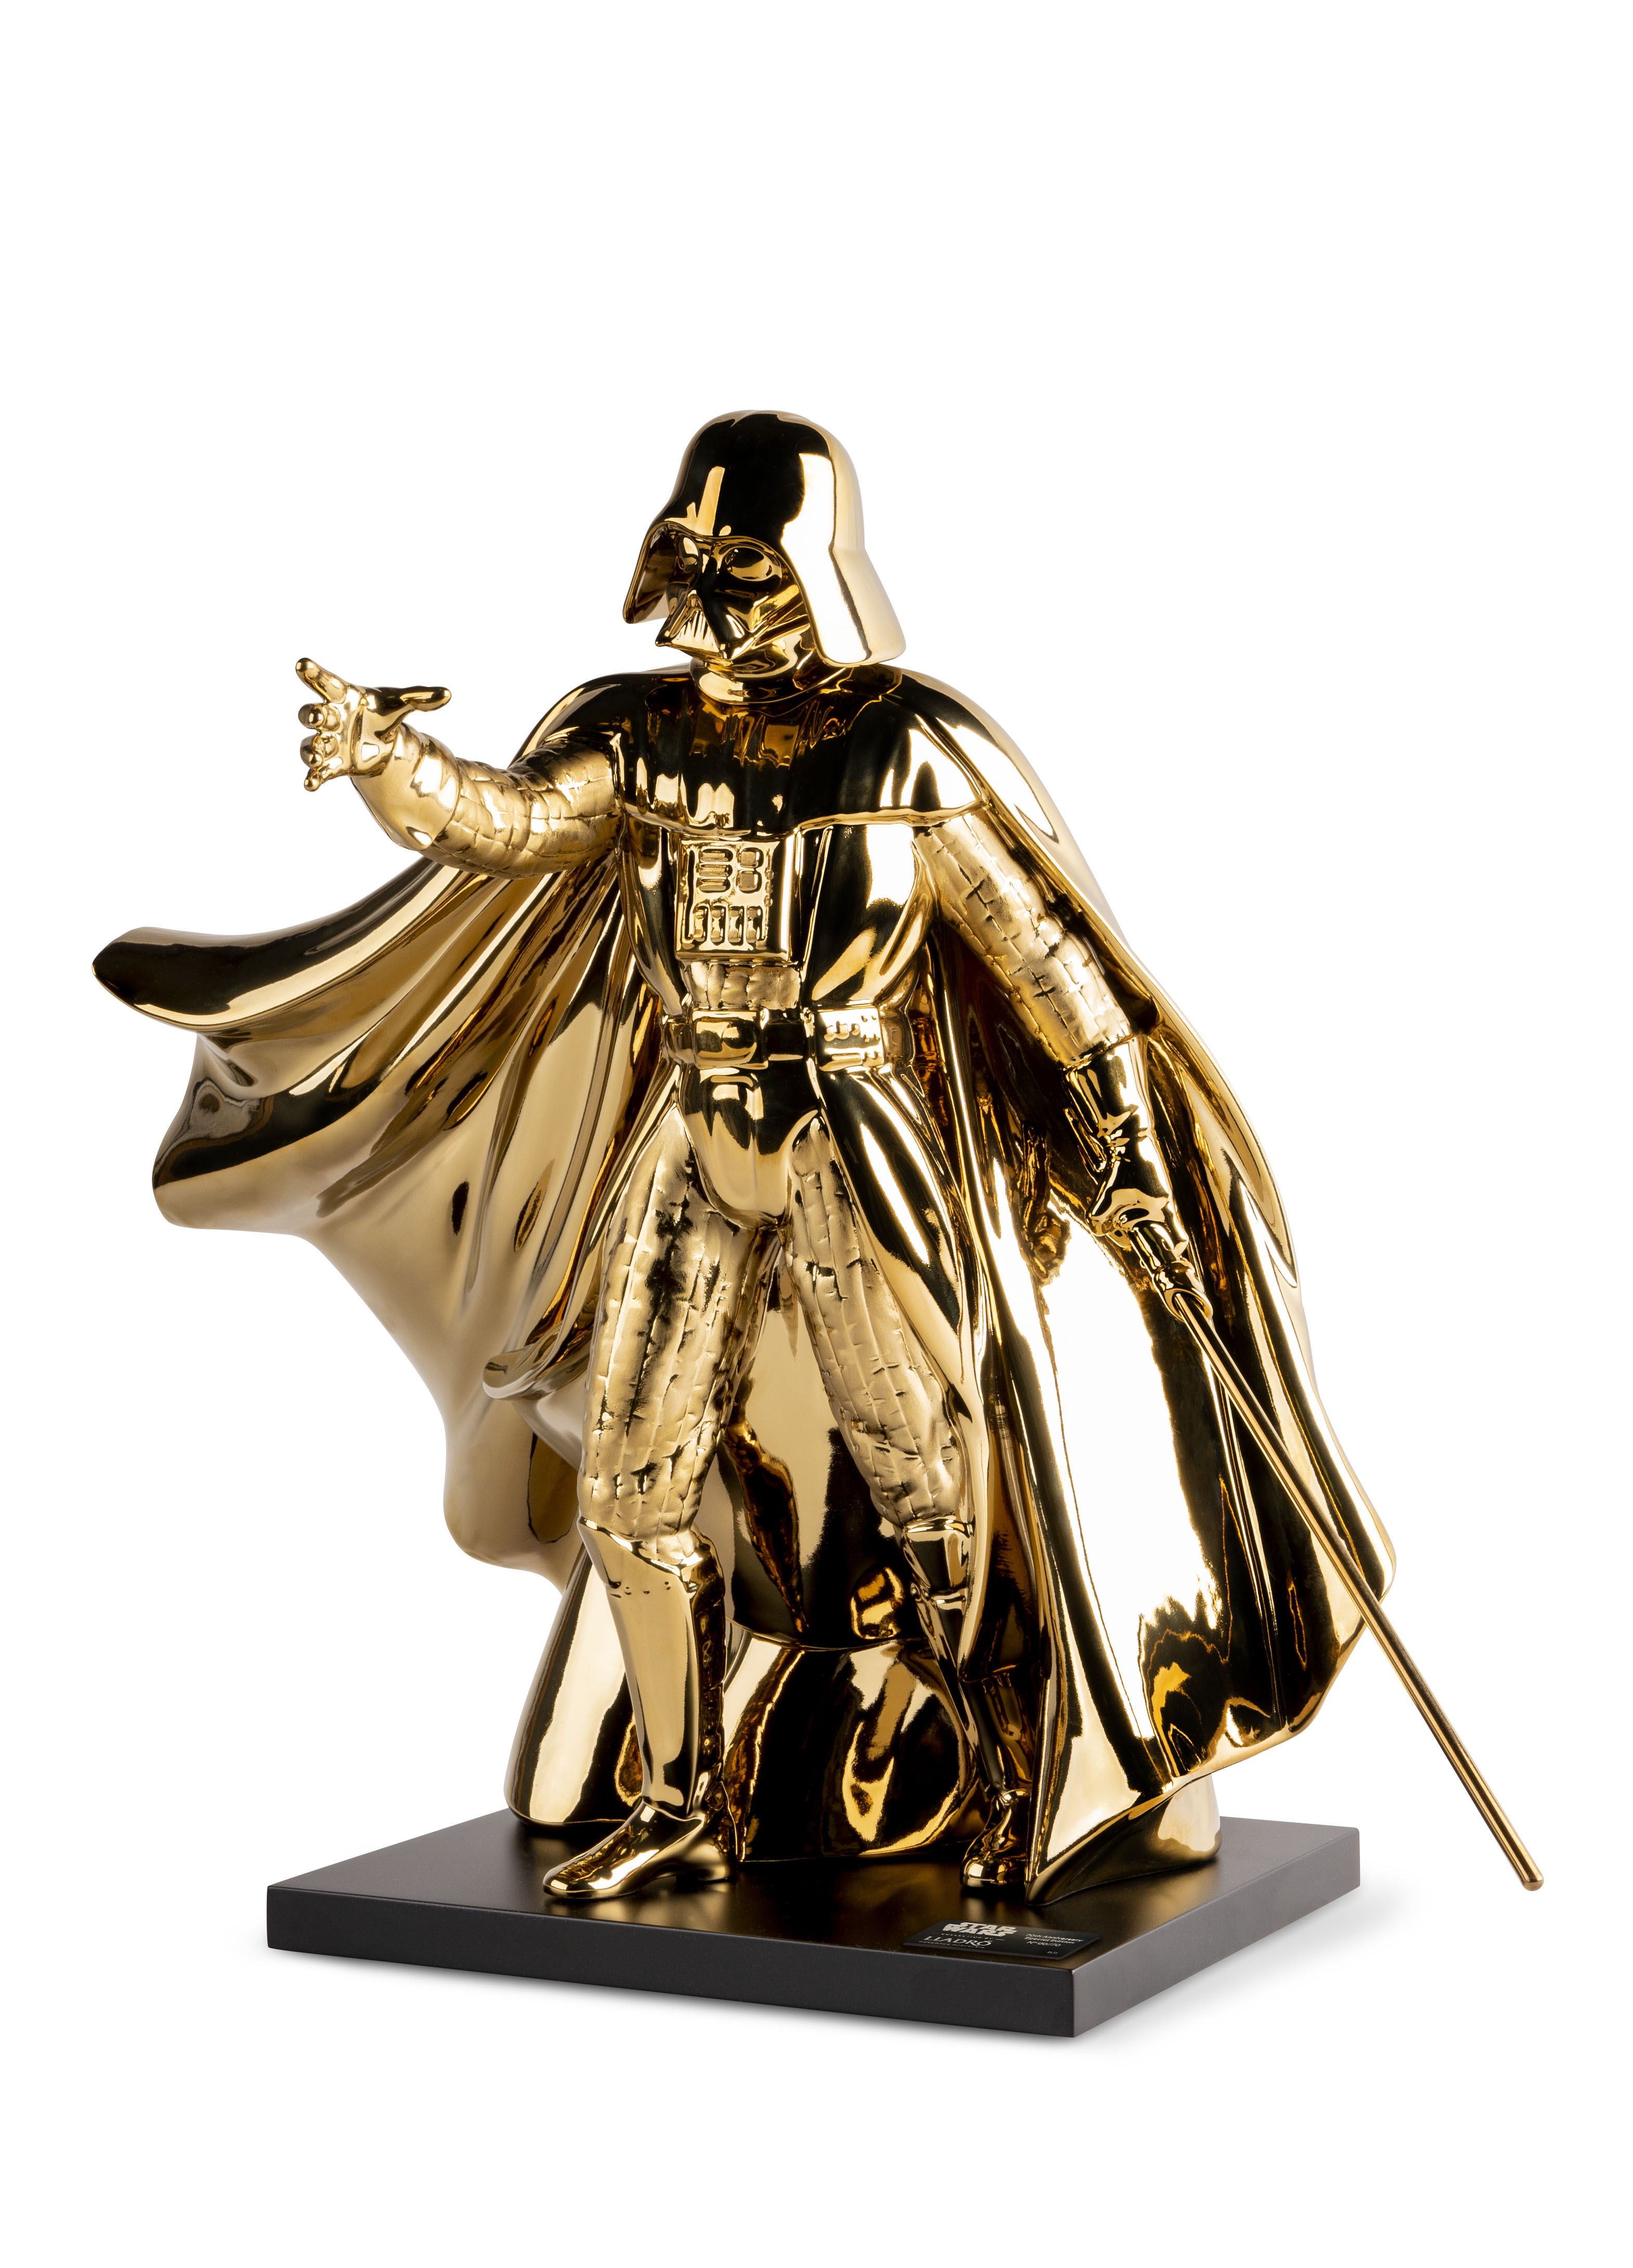 Lladró presenta a Londres una edició especial en porcellana de Darth Vader limitada a 70 unitats